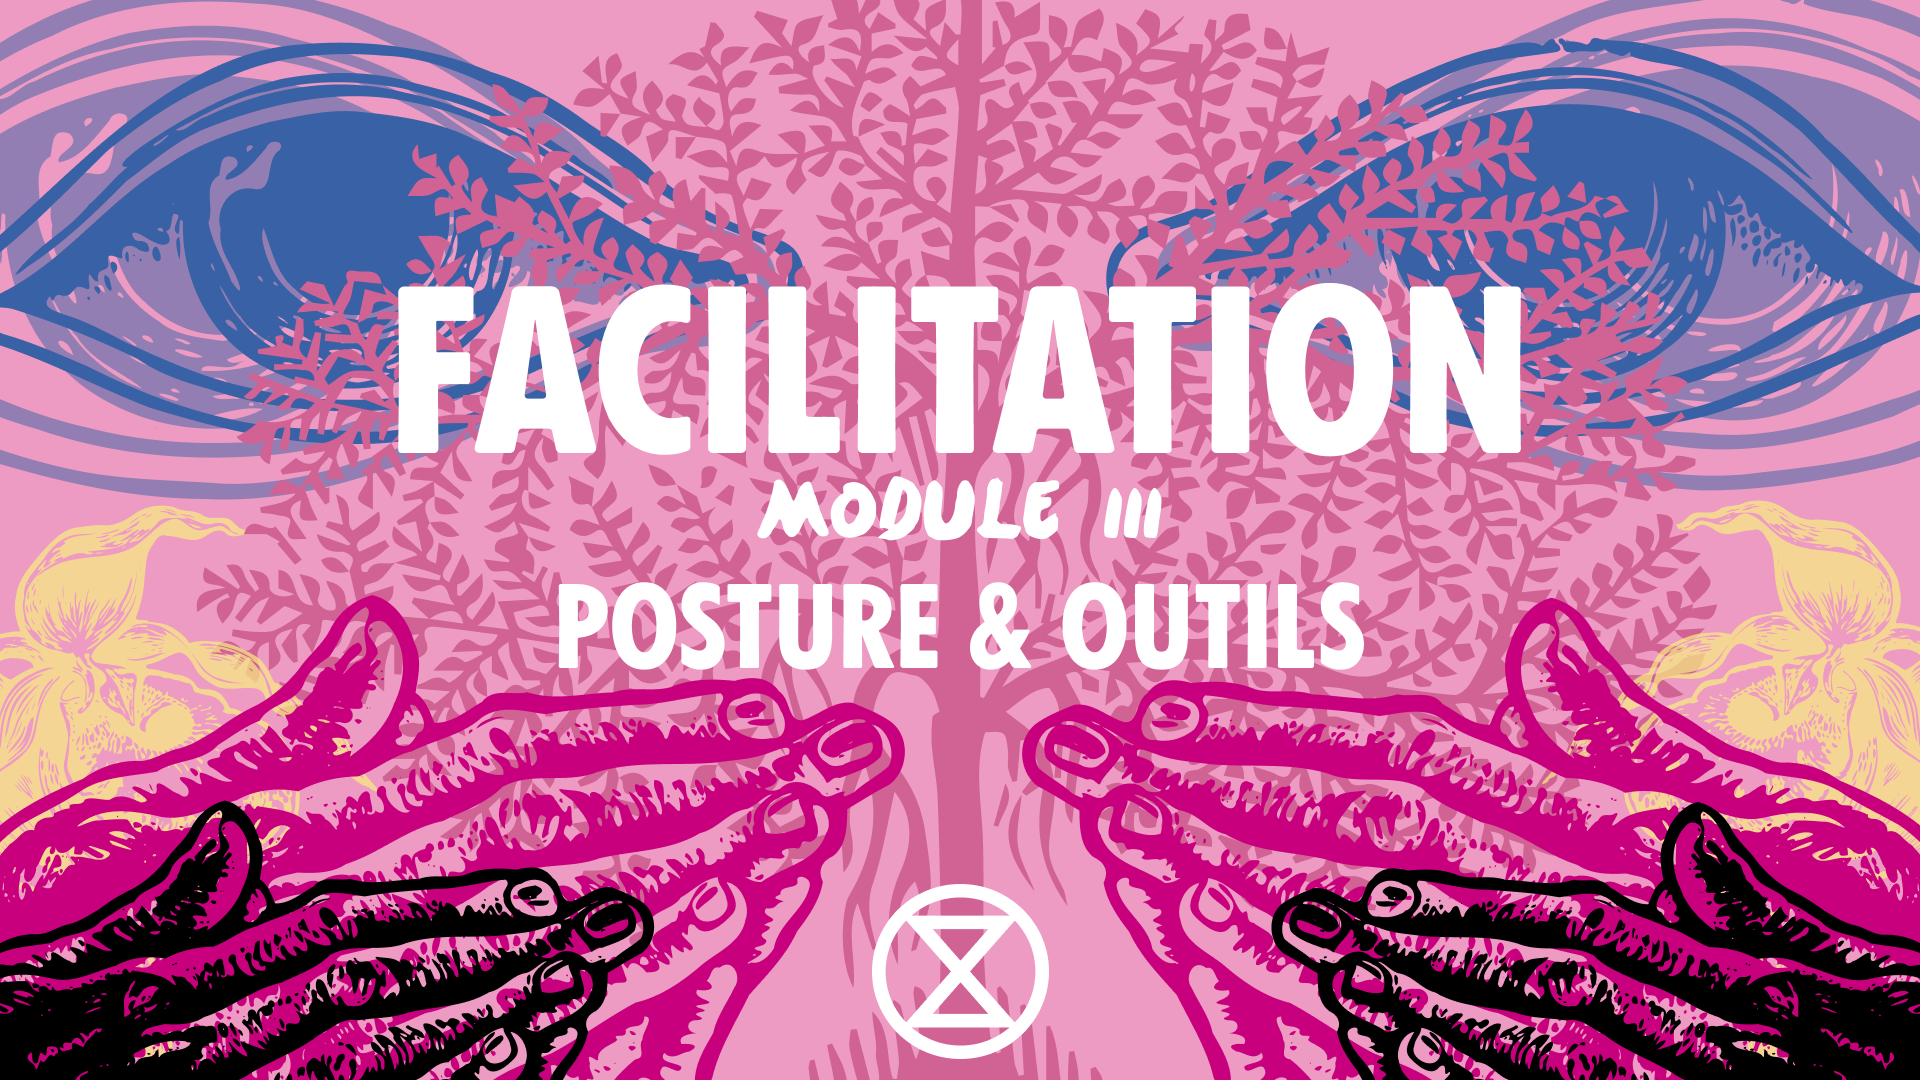 Facilitation: posture & outils – module III